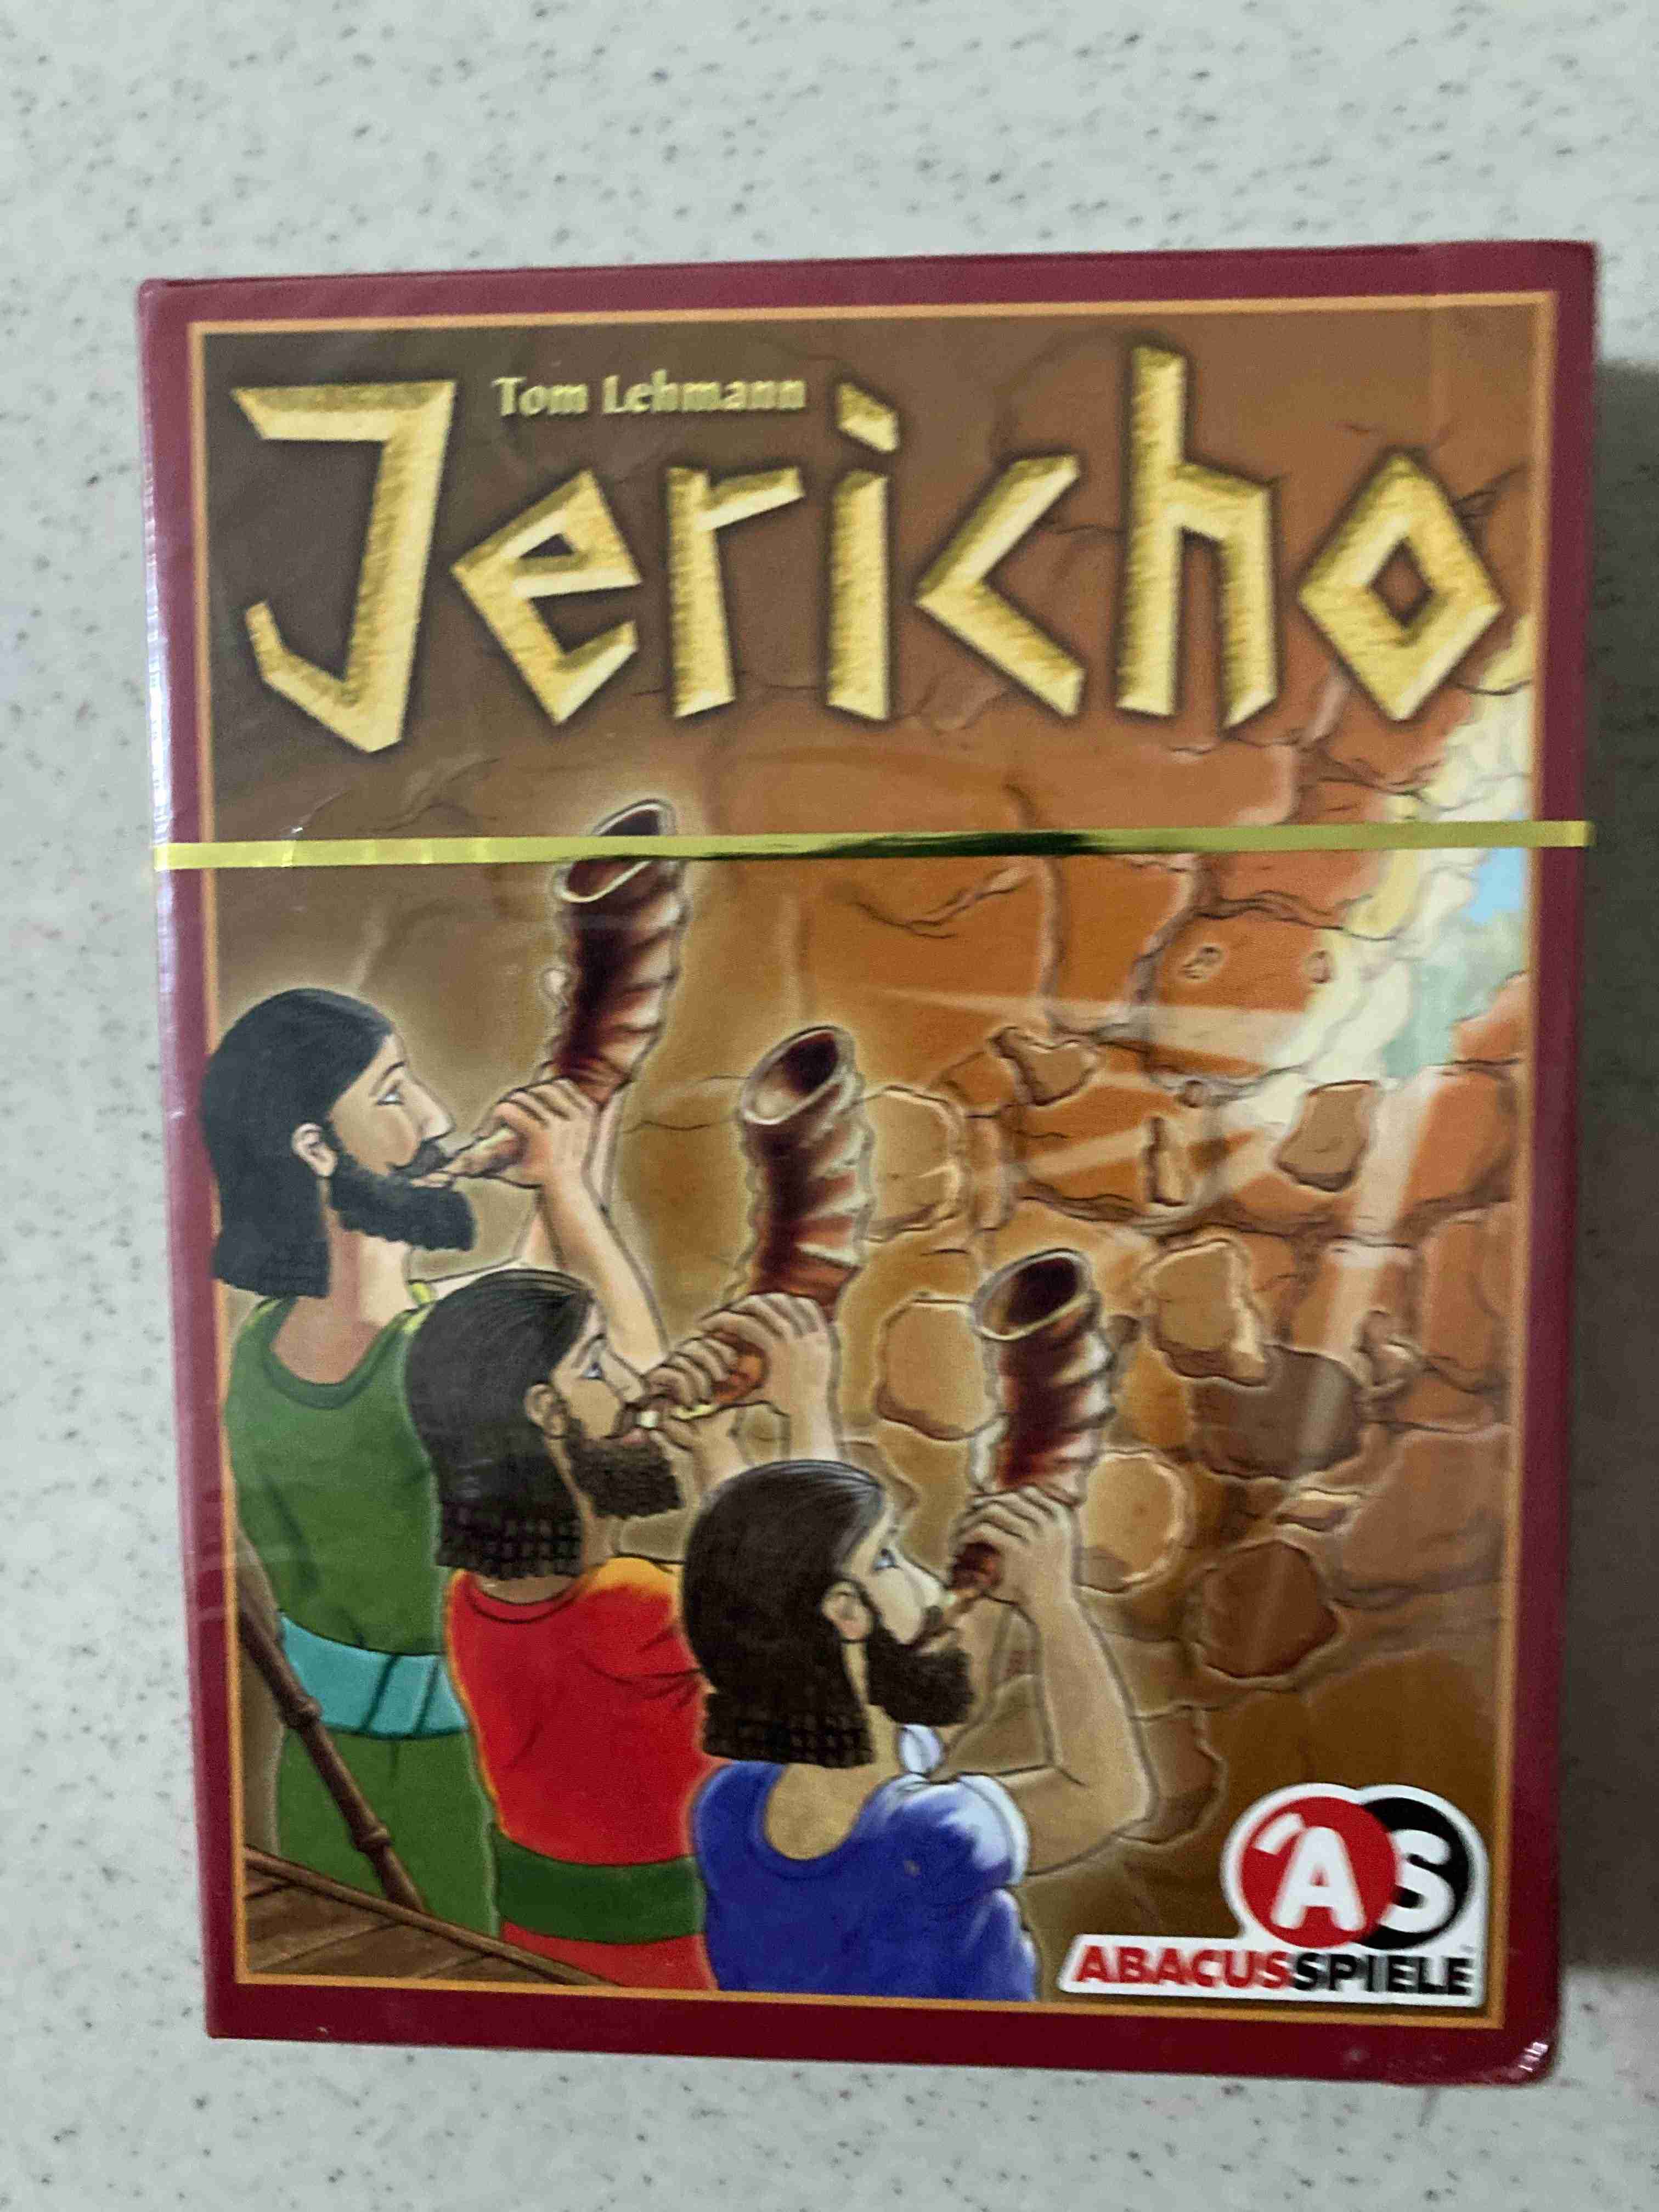 桌上遊戲 桌遊 紙牌遊戲 耶利哥 Jericho(含本人翻譯中文規則)